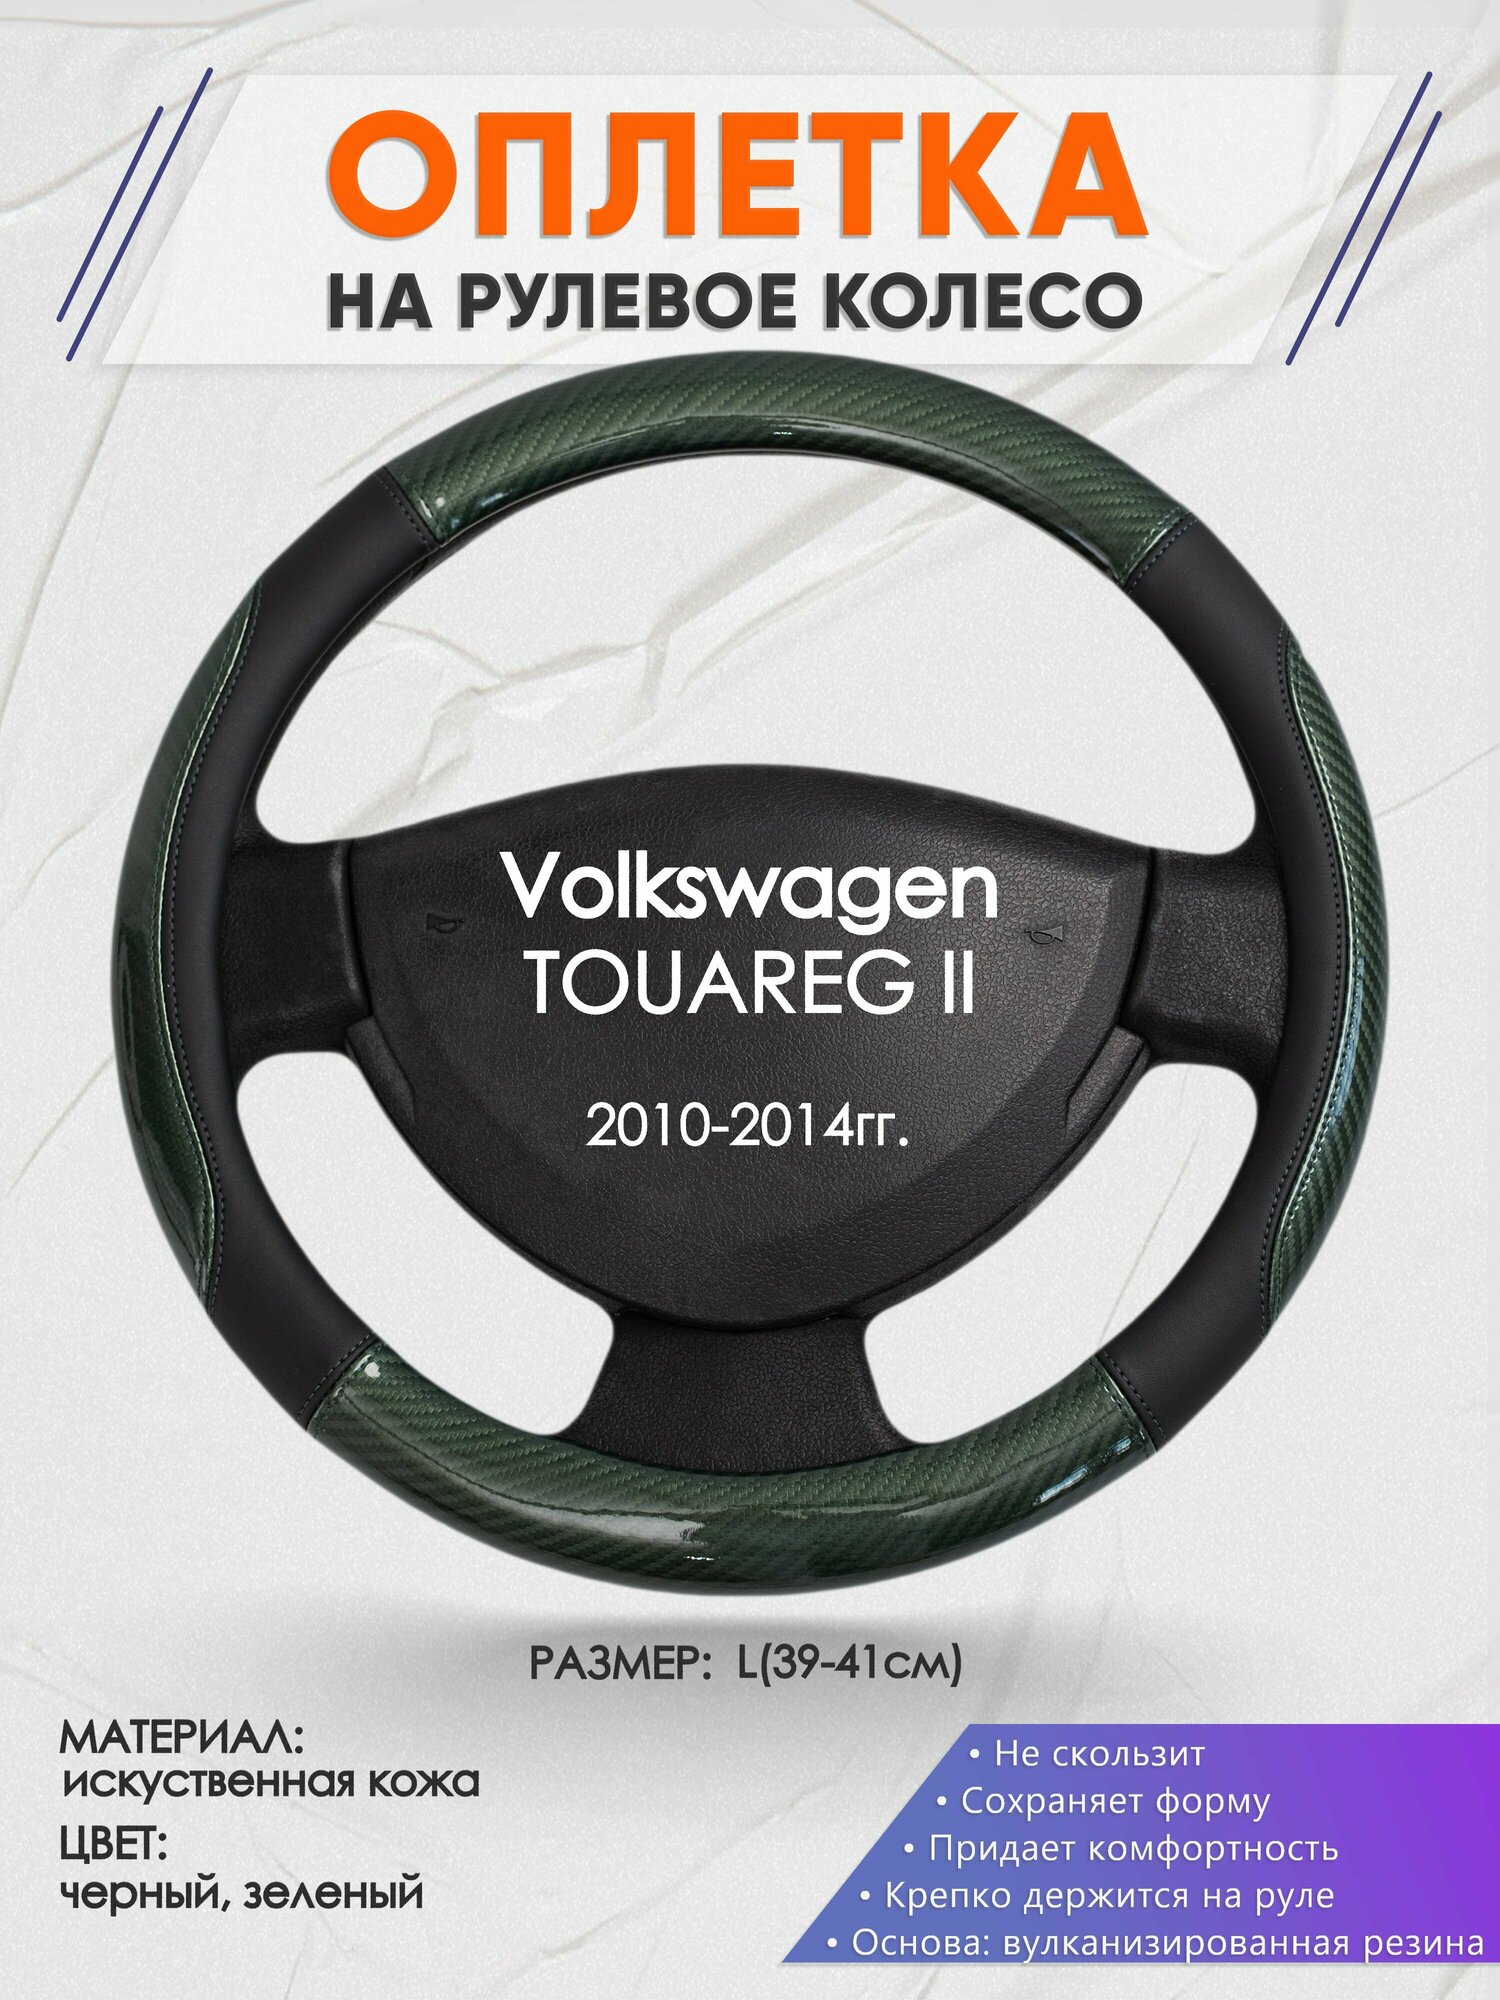 Оплетка на руль для Volkswagen TOUAREG 2(Фольксваген Туарег 2) 2010-2014, L(39-41см), Искусственная кожа 19